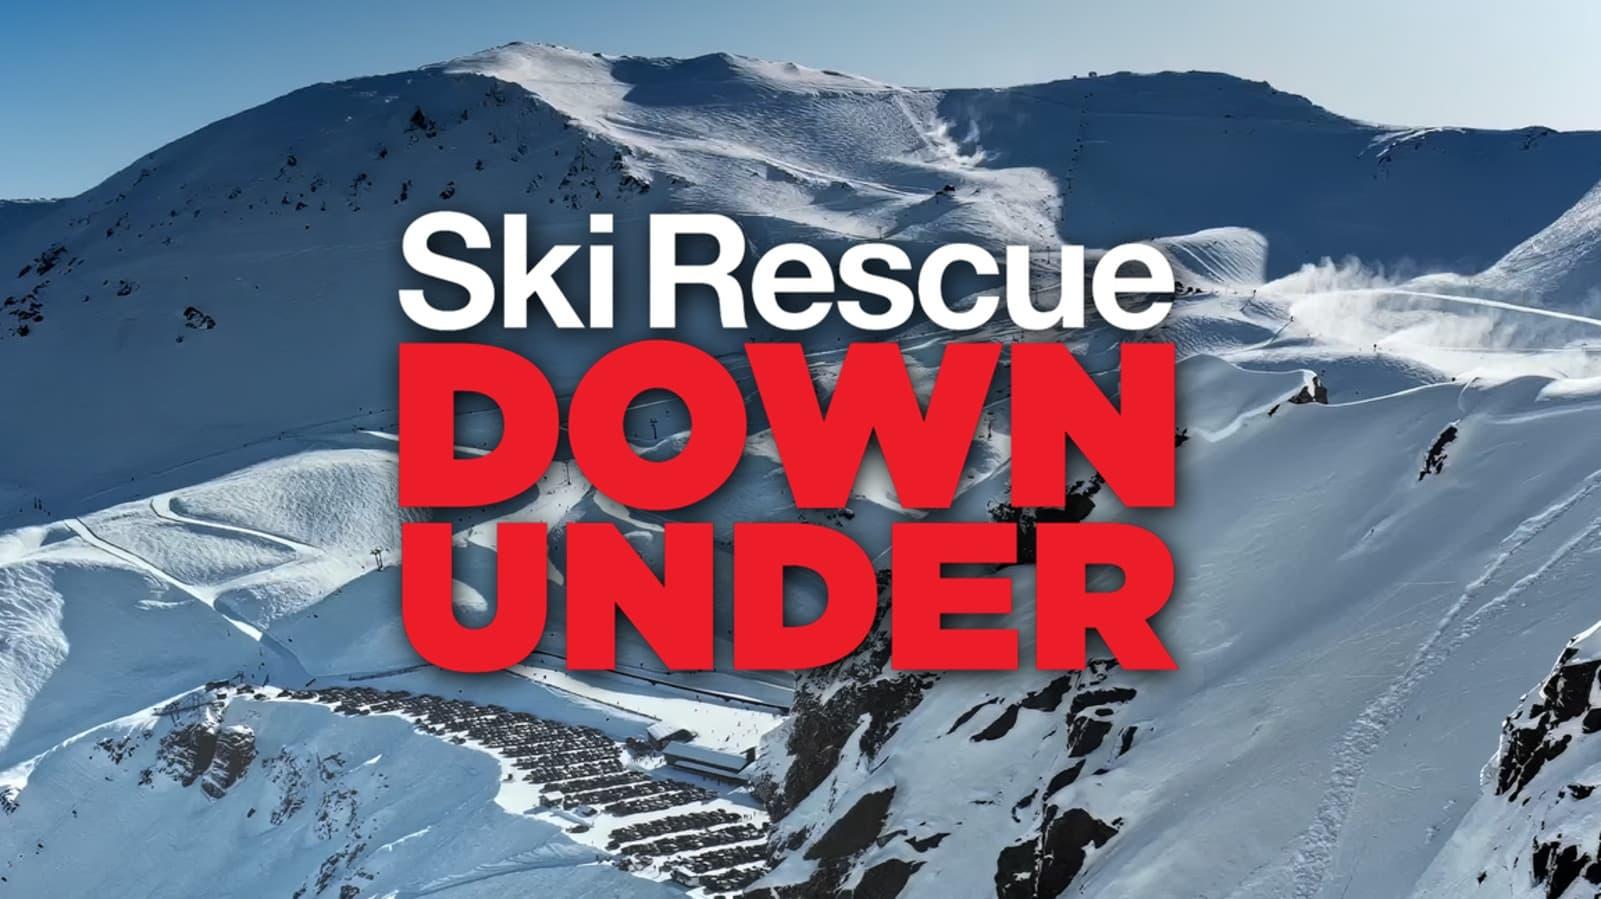 Ski Rescue Down Under backdrop